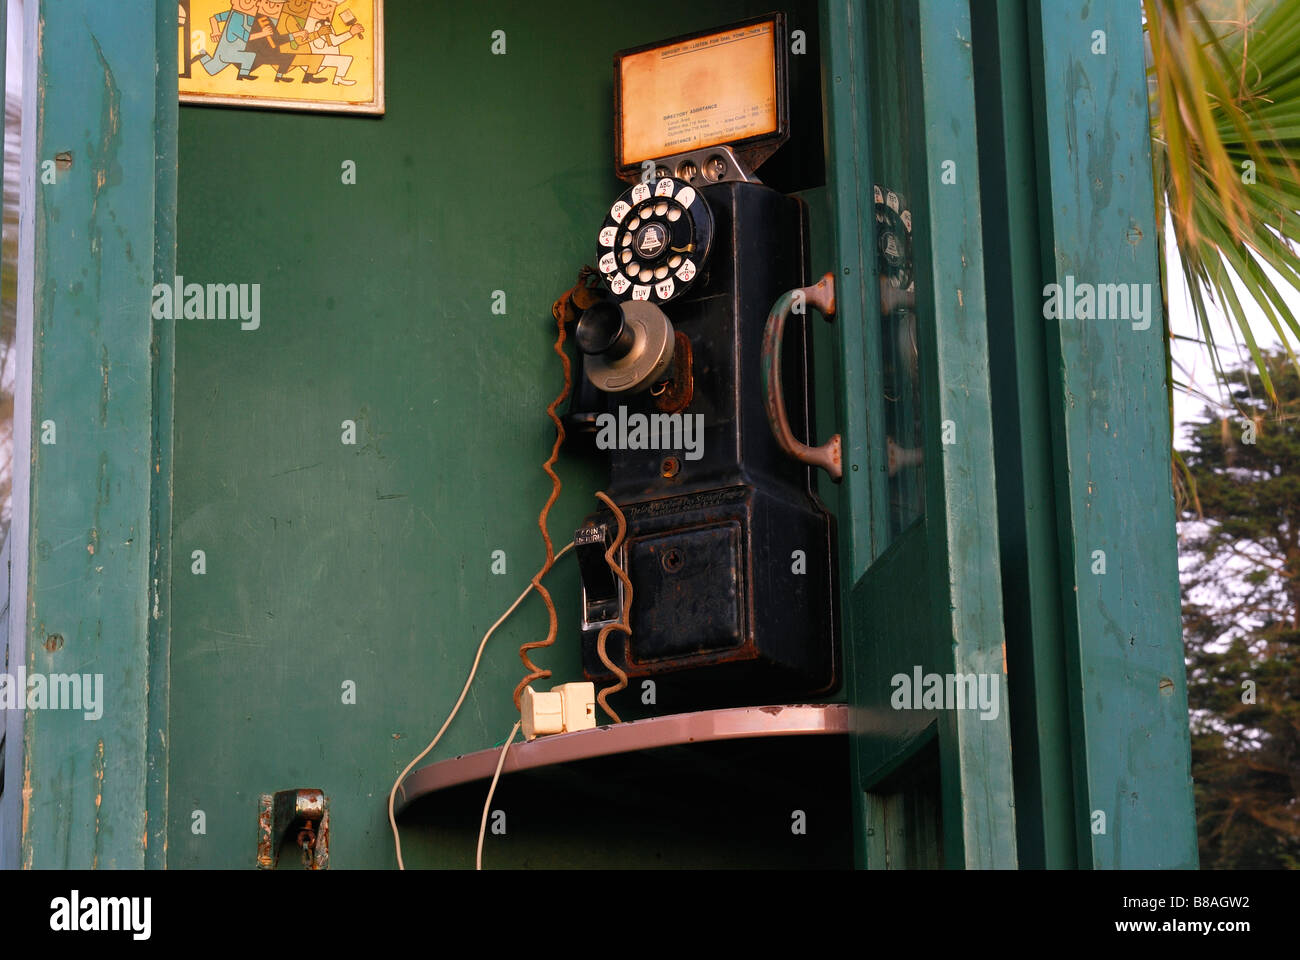 Vintage phone booth in bodega bay california Stock Photo